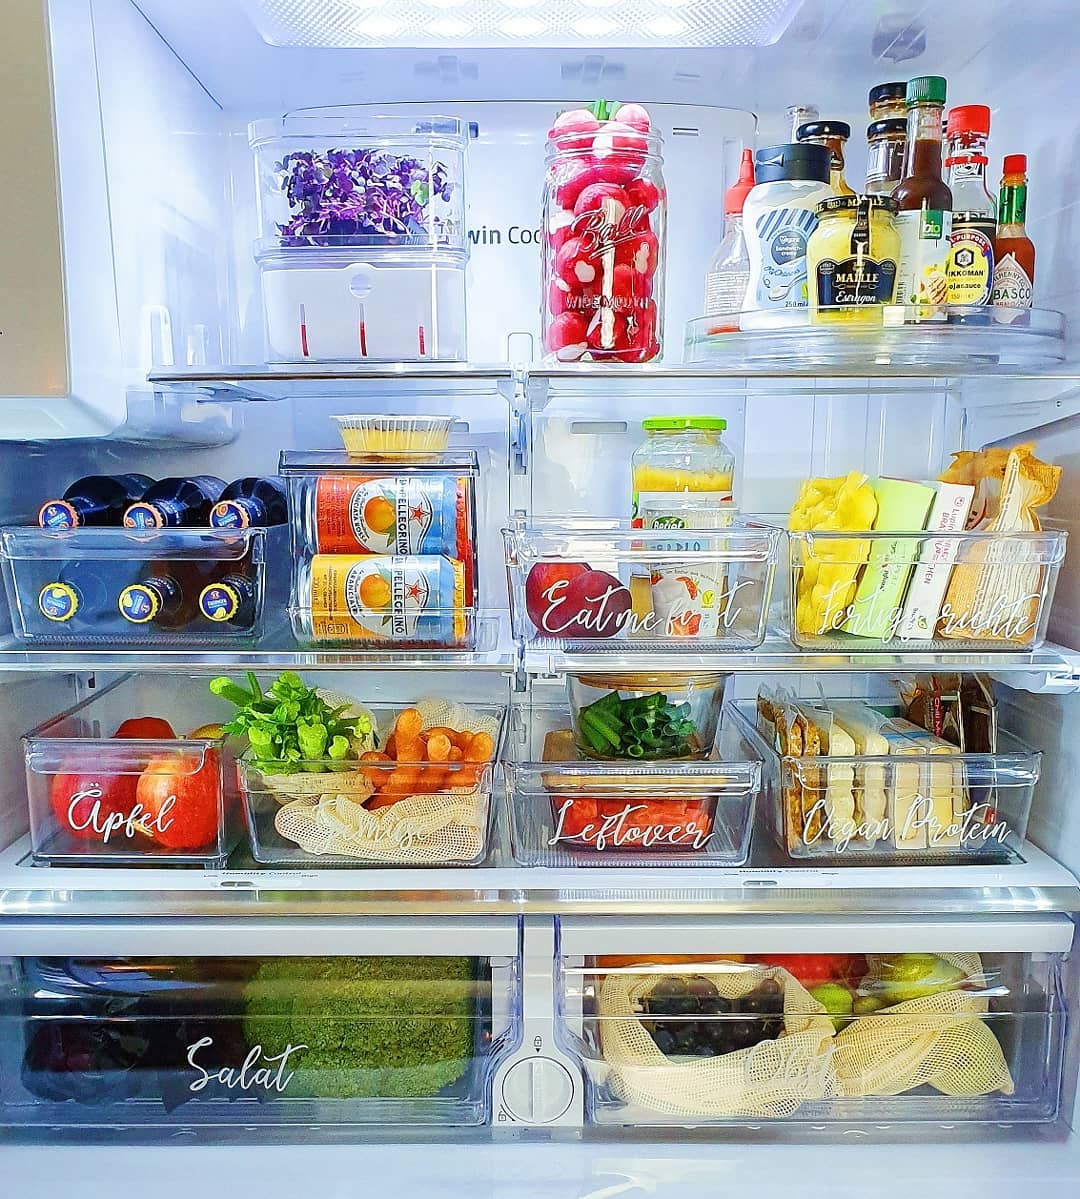 https://www.extraspace.com/blog/wp-content/uploads/2017/01/declutter-fridge-kitchen-ideas.jpg